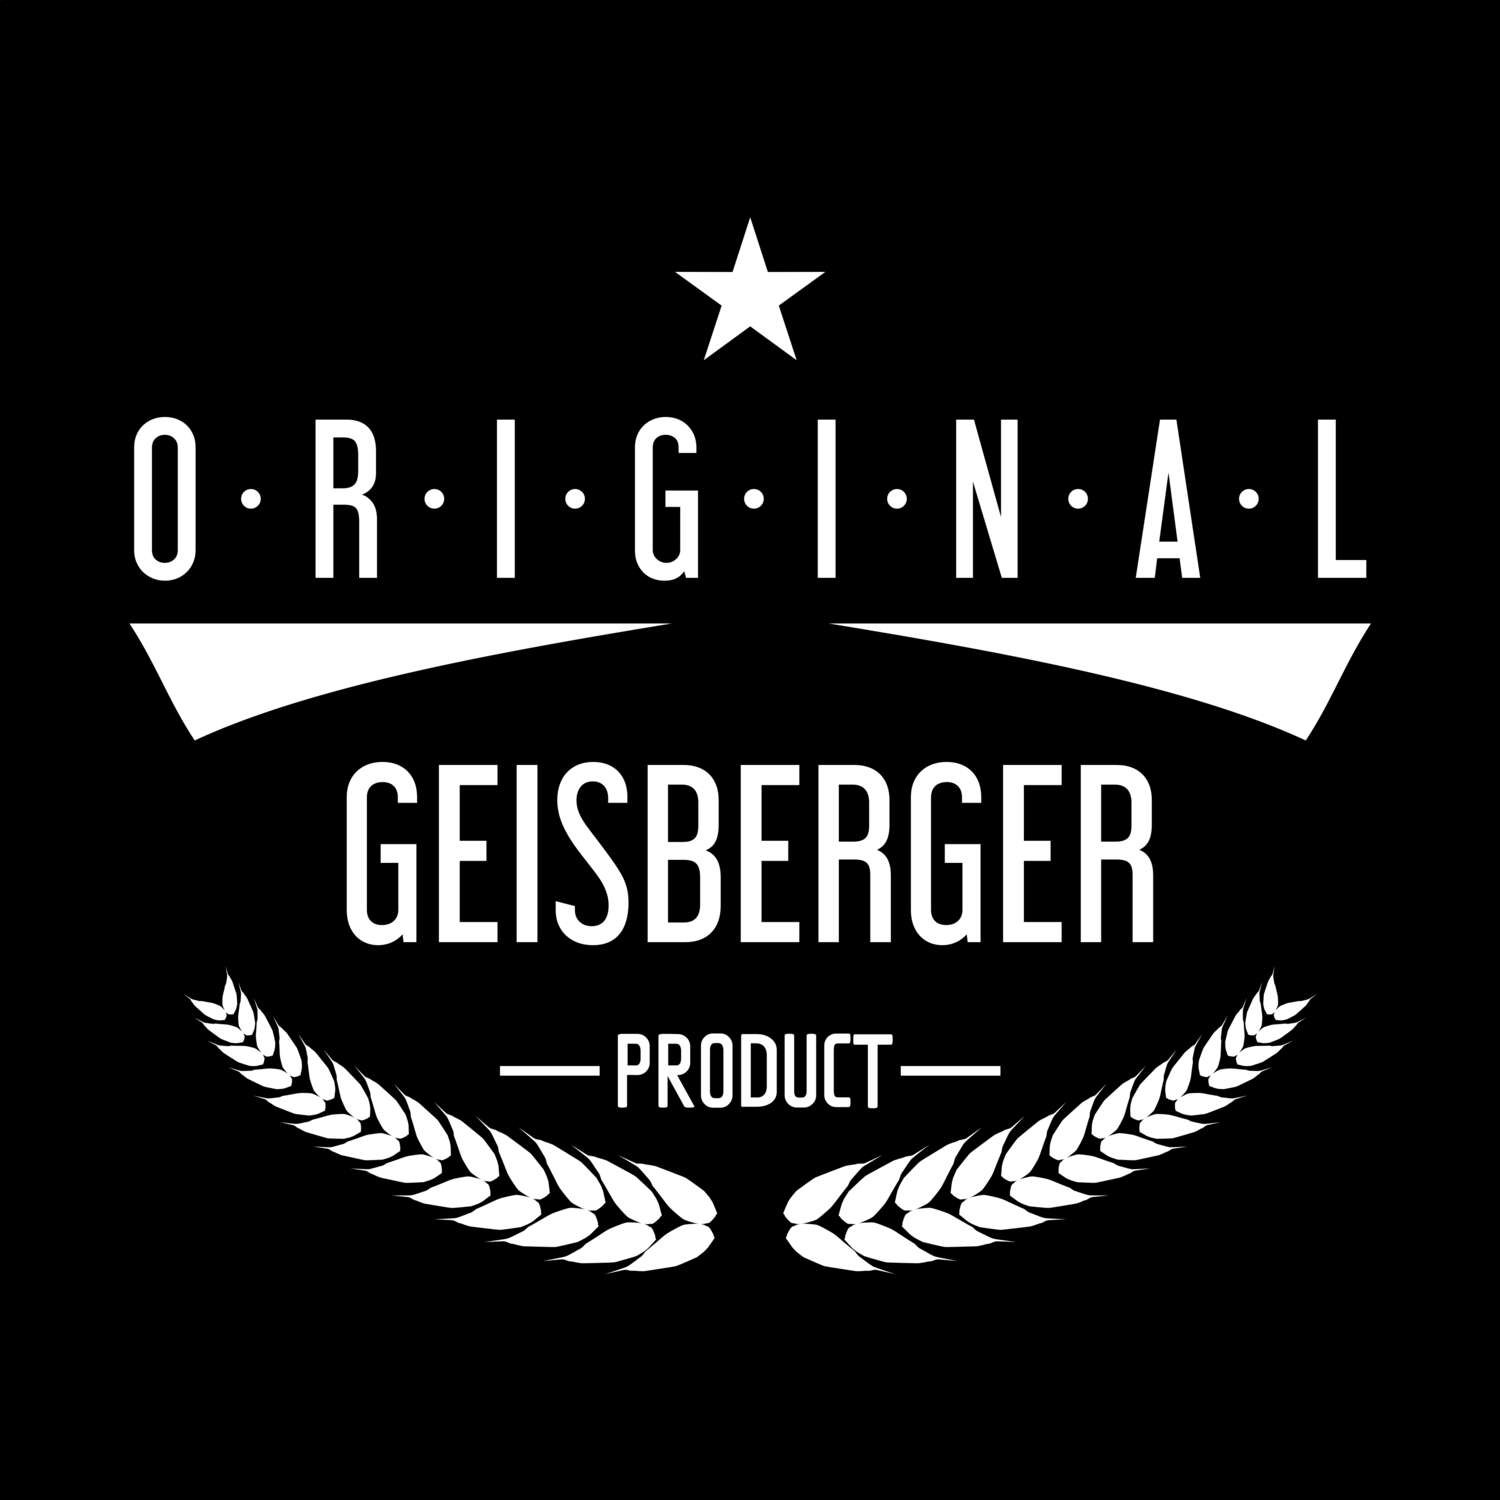 Geisberger T-Shirt »Original Product«